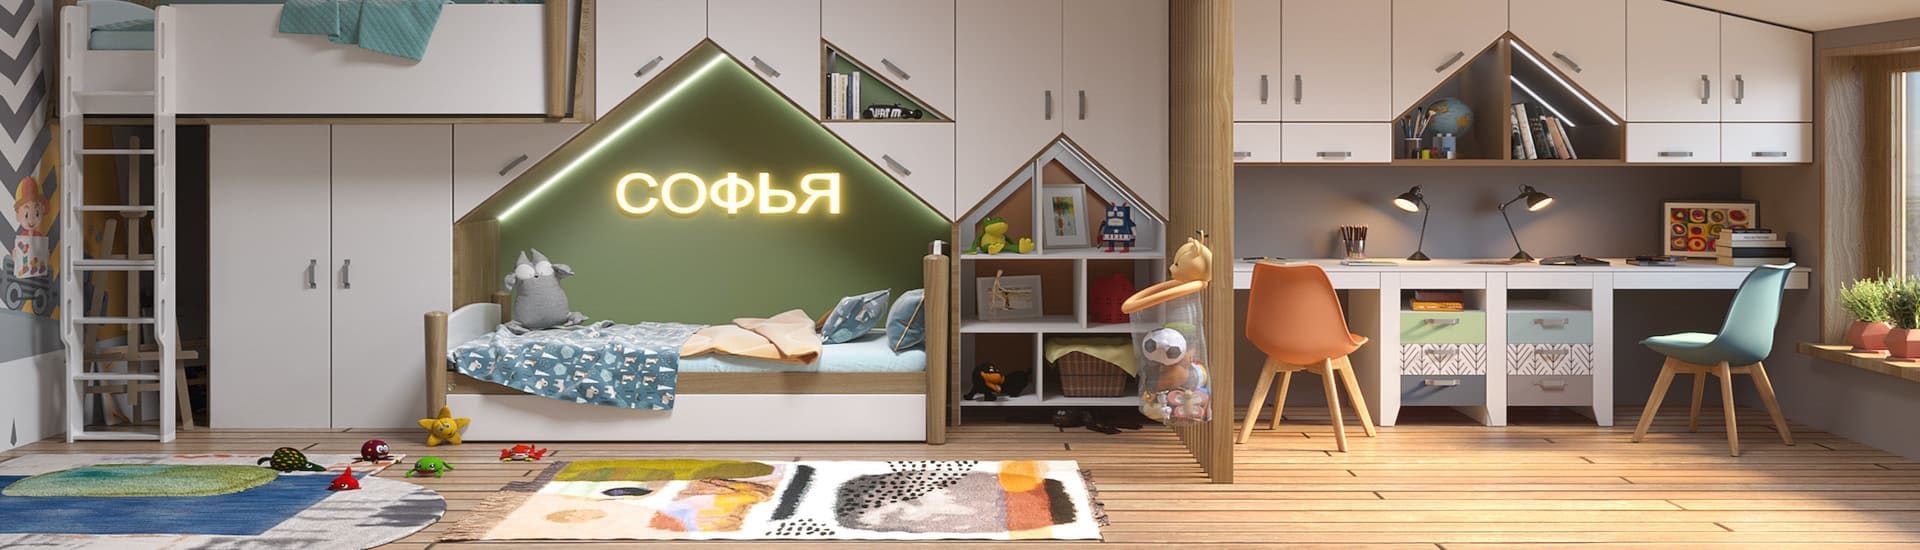 Модные идеи дизайна детской спальни для мальчика